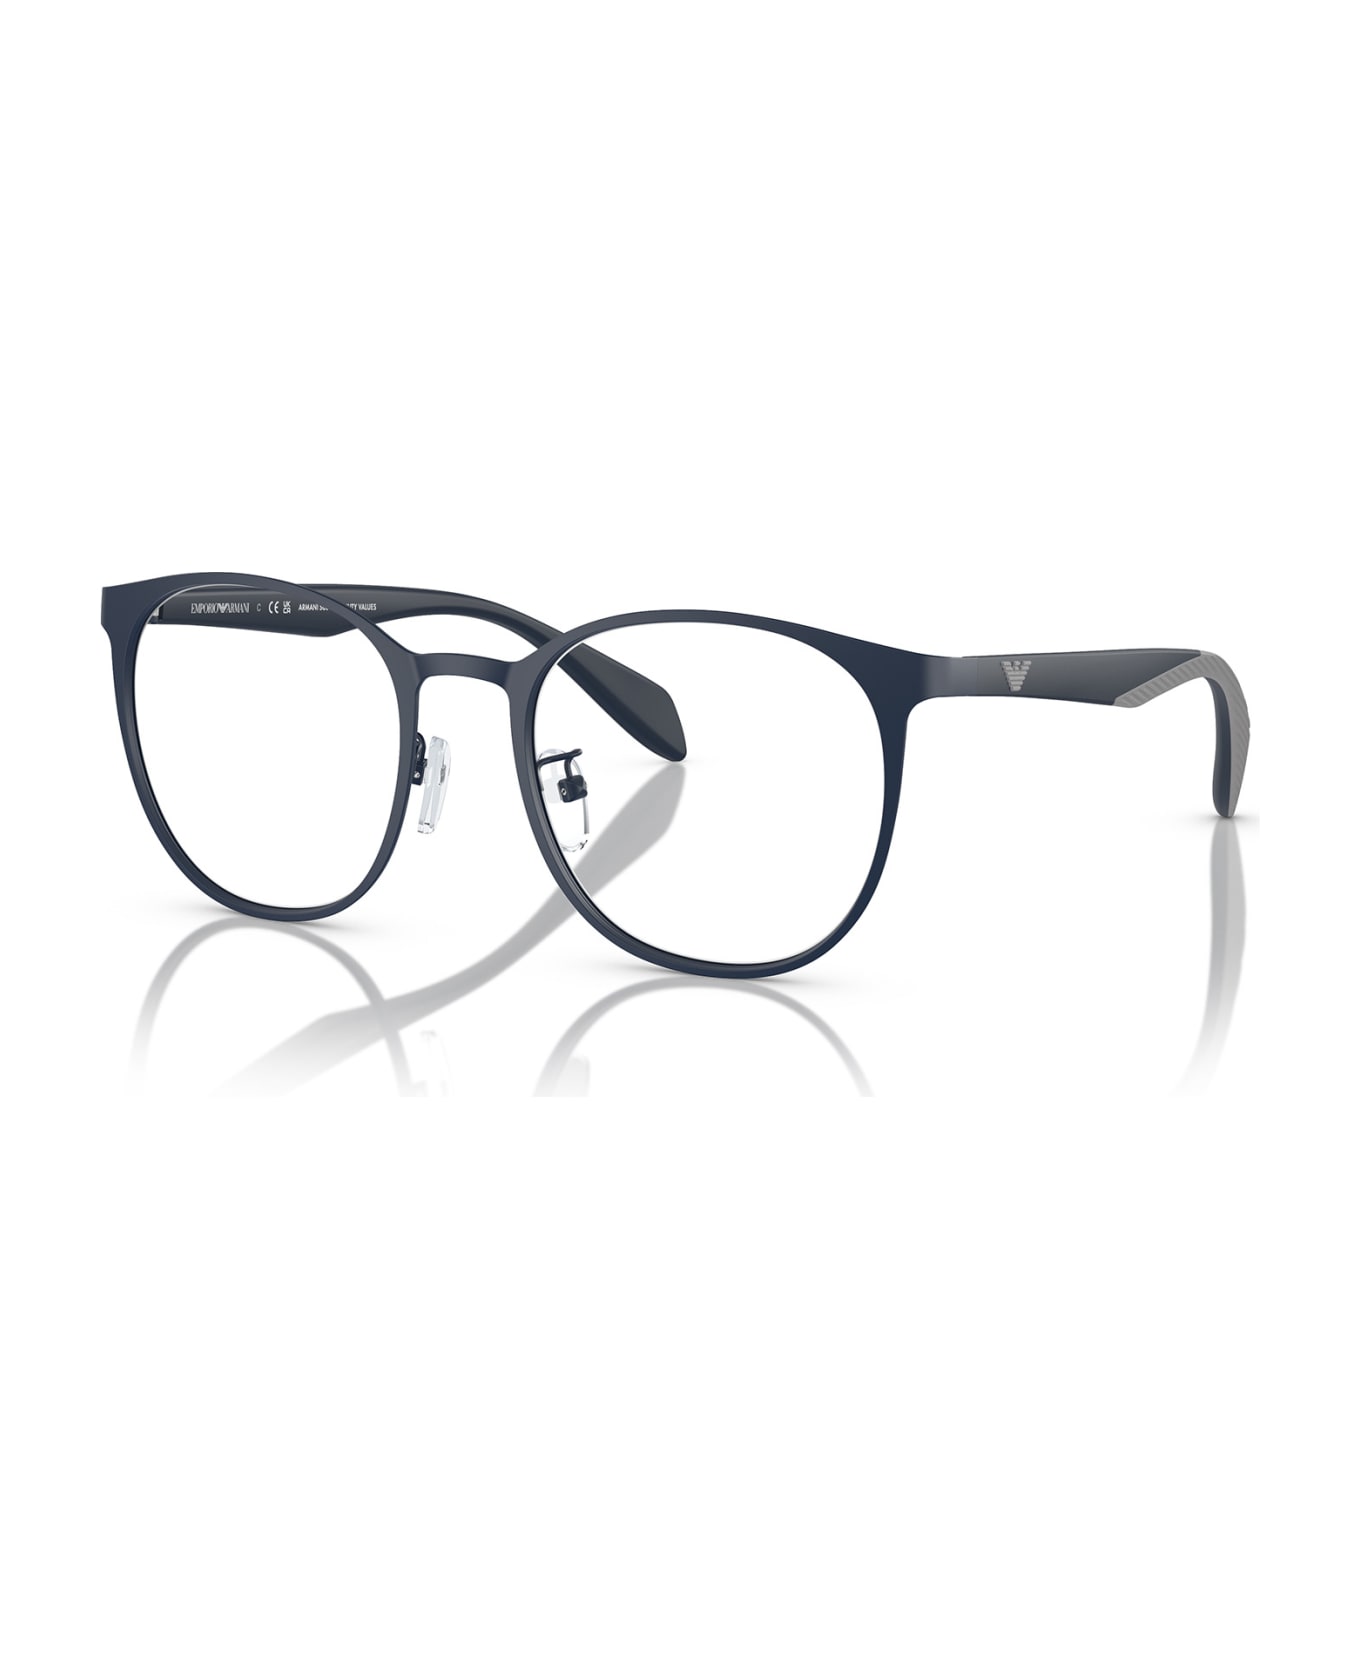 Emporio Armani Ea1148 Matte Blue Glasses - Matte Blue